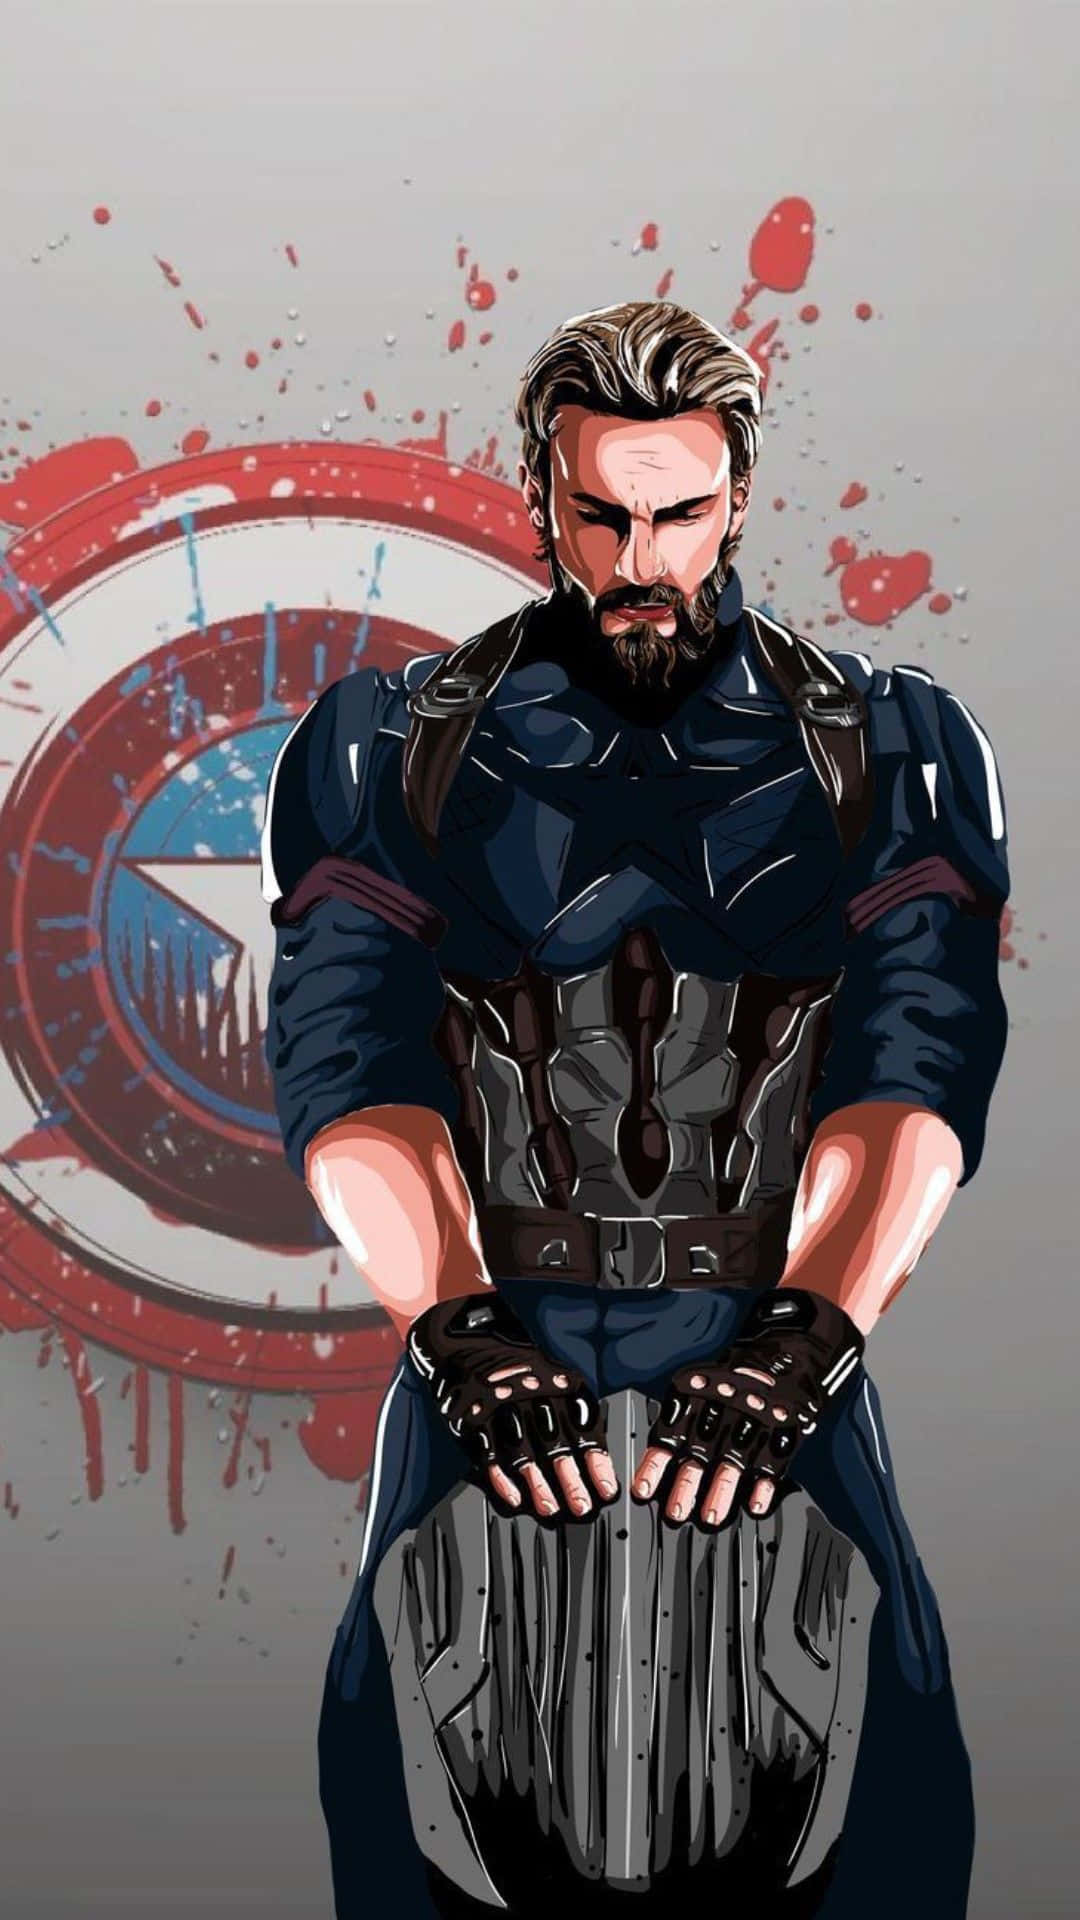 Usuariosde Android En Todas Partes, Uníos Bajo La Bandera Del Capitán América.